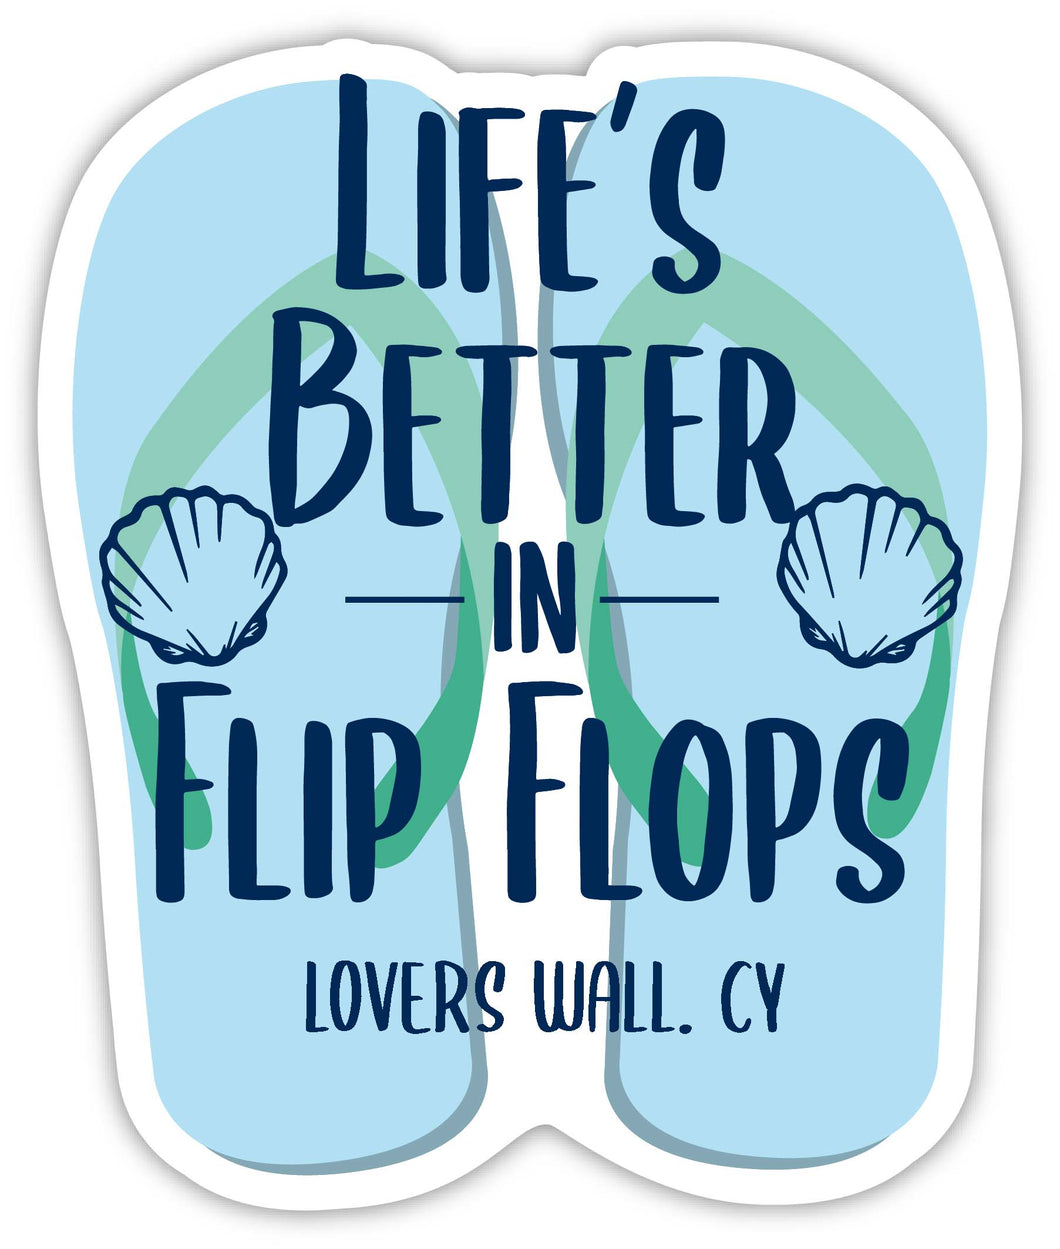 Lovers Wall Cayman Islands Souvenir 4 Inch Vinyl Decal Sticker Flip Flop Design